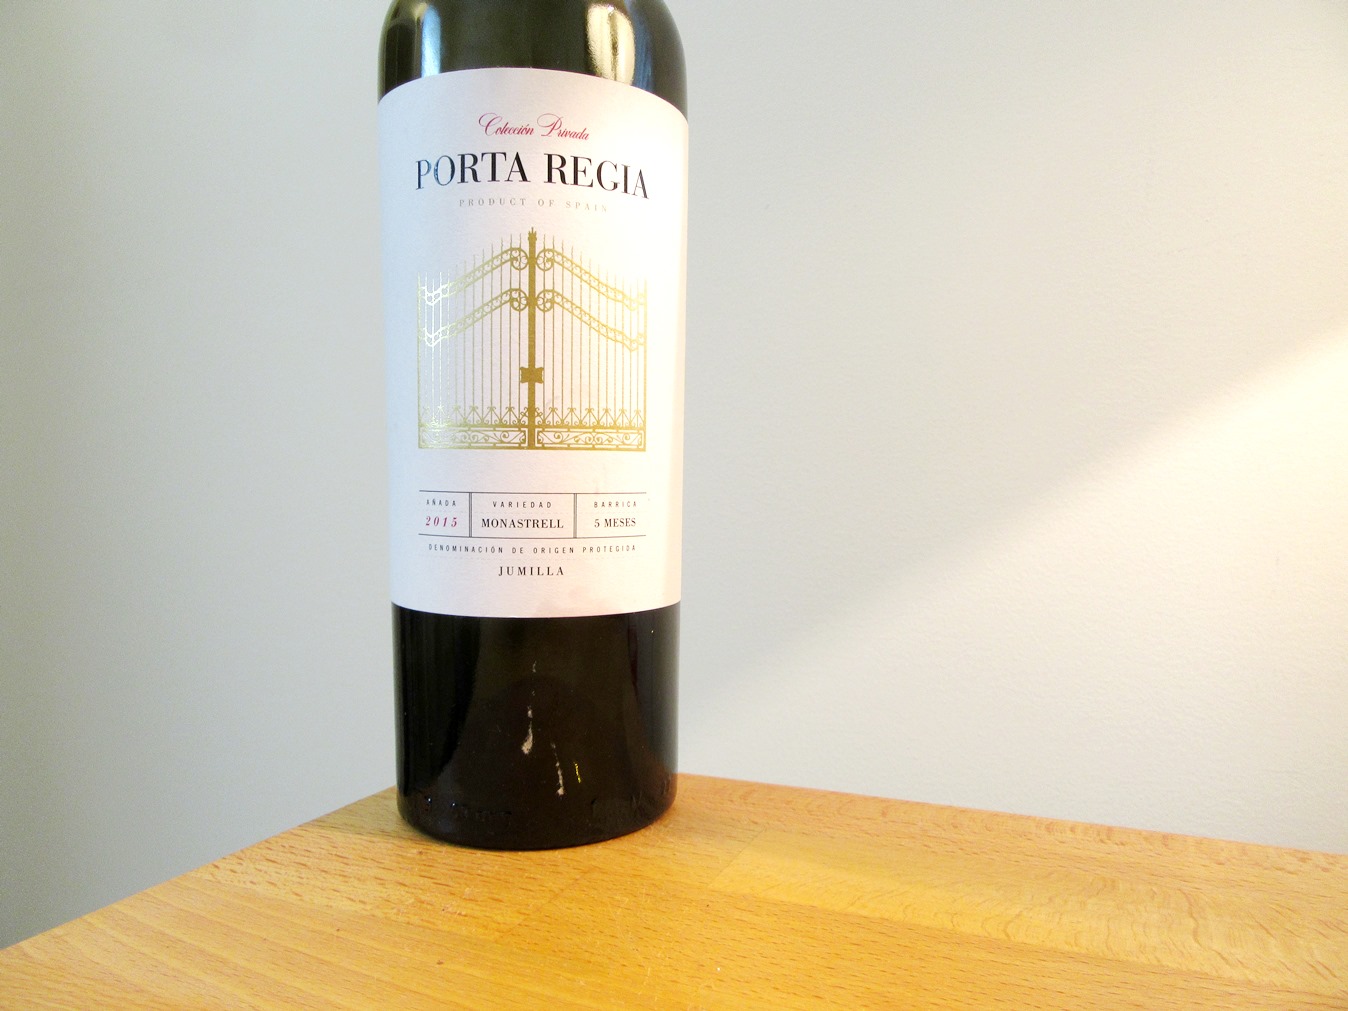 Porta Regia Colección Privada Monastrell 2015, Jumilla, Spain, Wine Casual